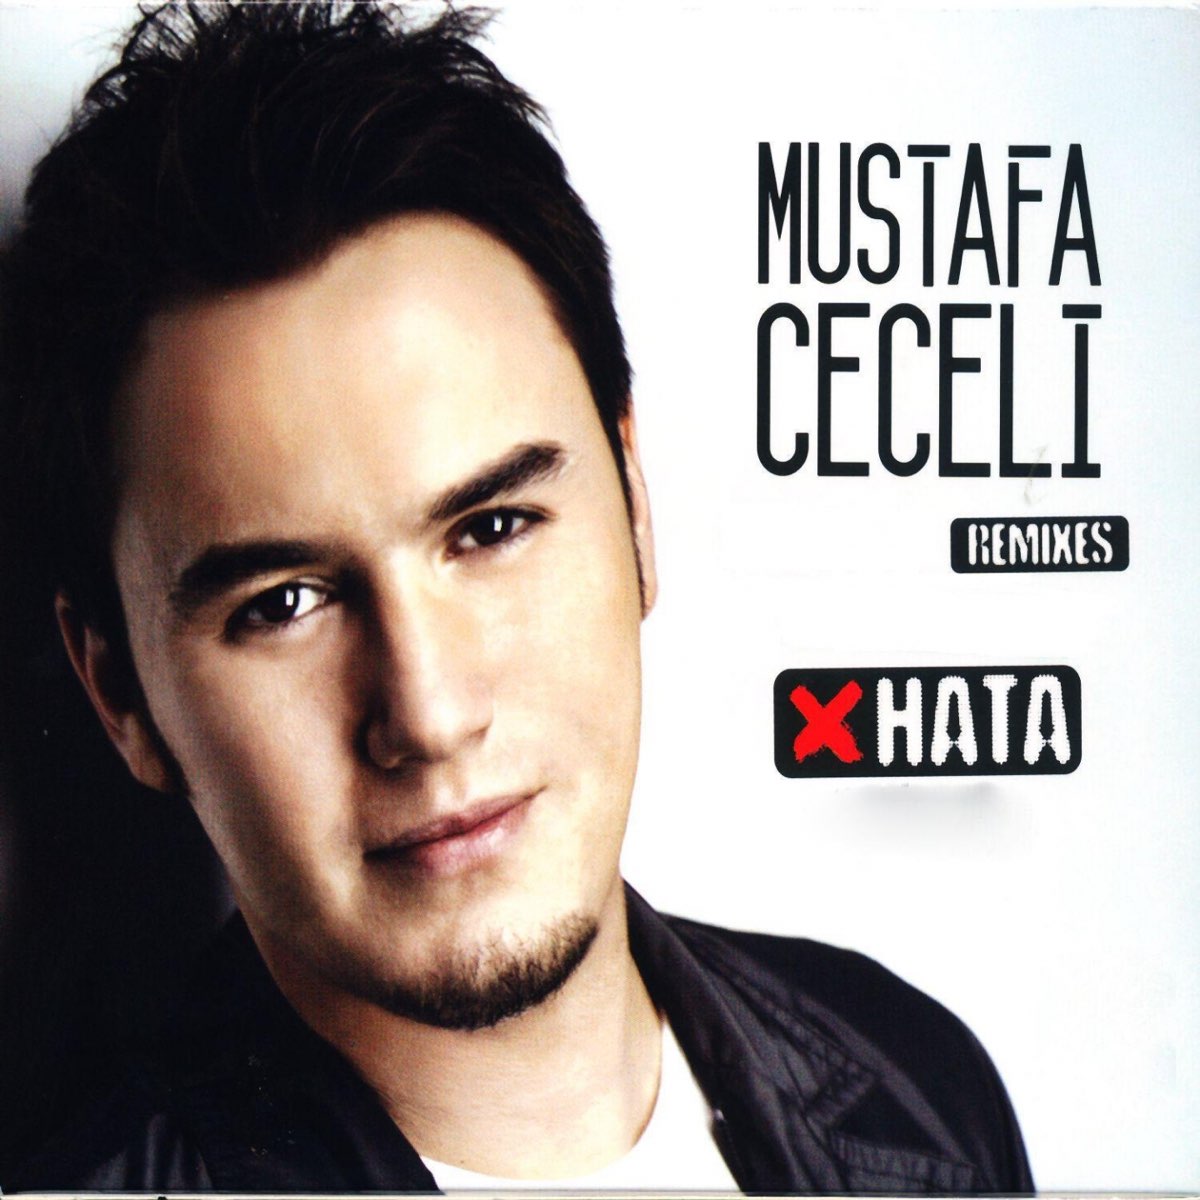 Mustafa Ceceli (Remixes) – Album par Mustafa Ceceli – Apple Music